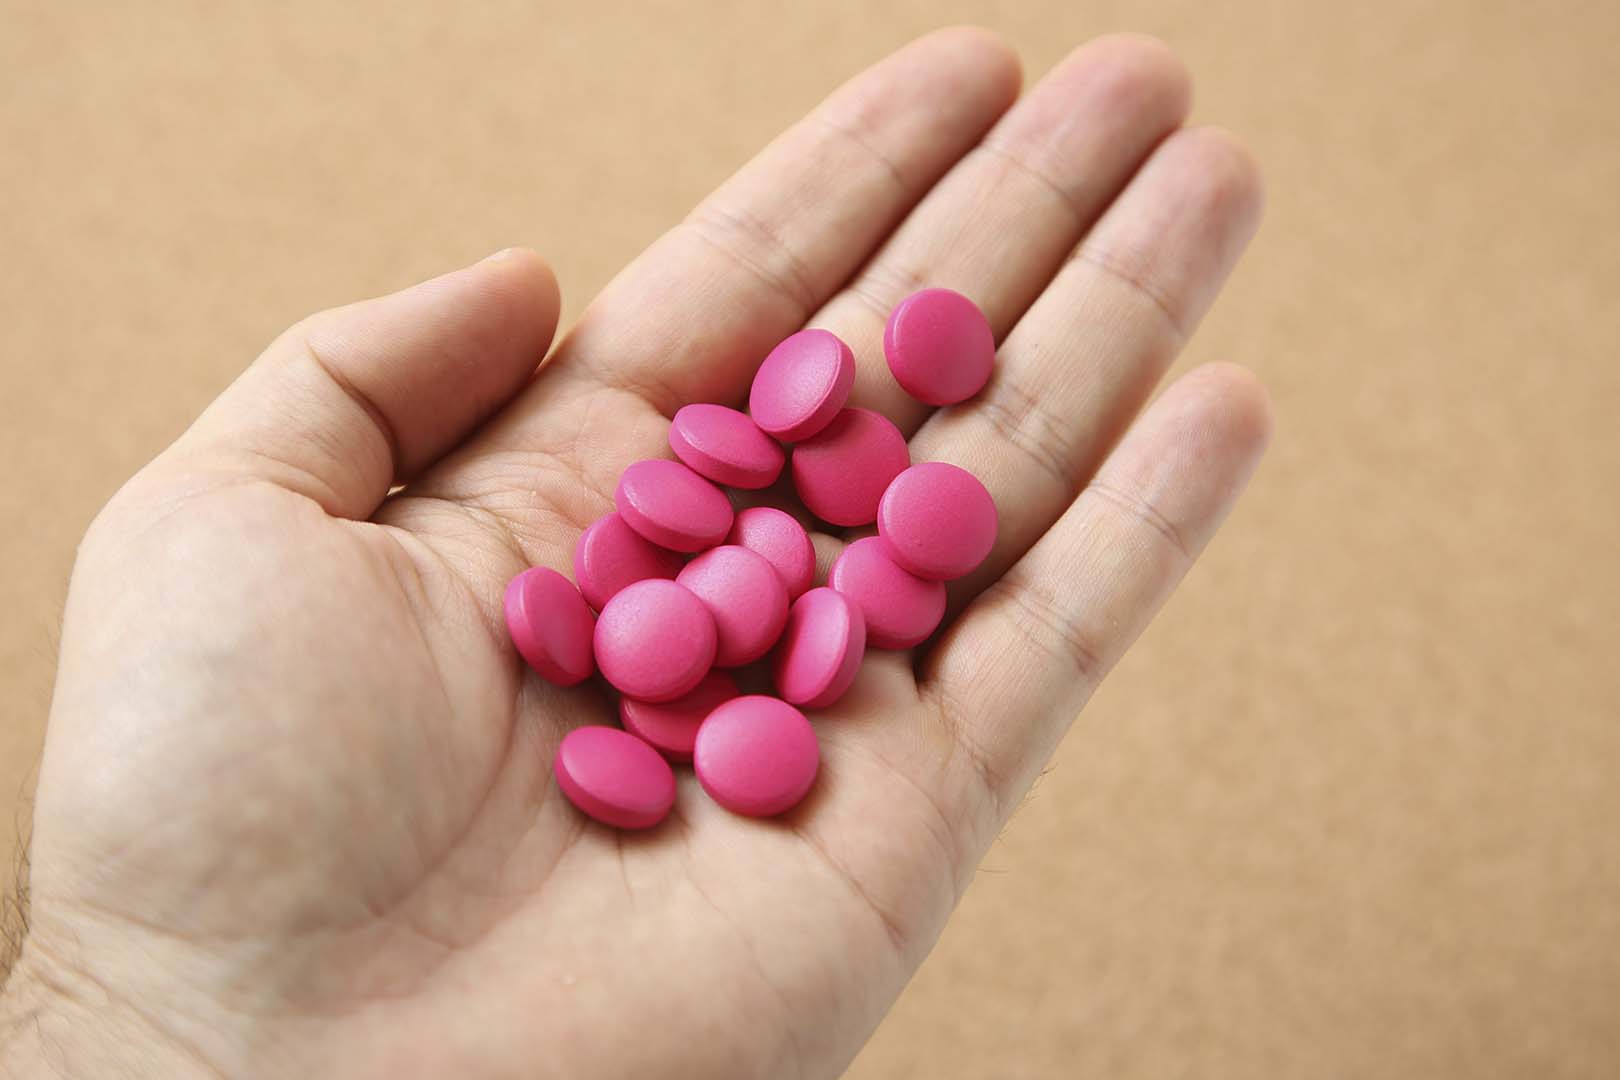 Harga neurobion forte pink obat apa kegunaan